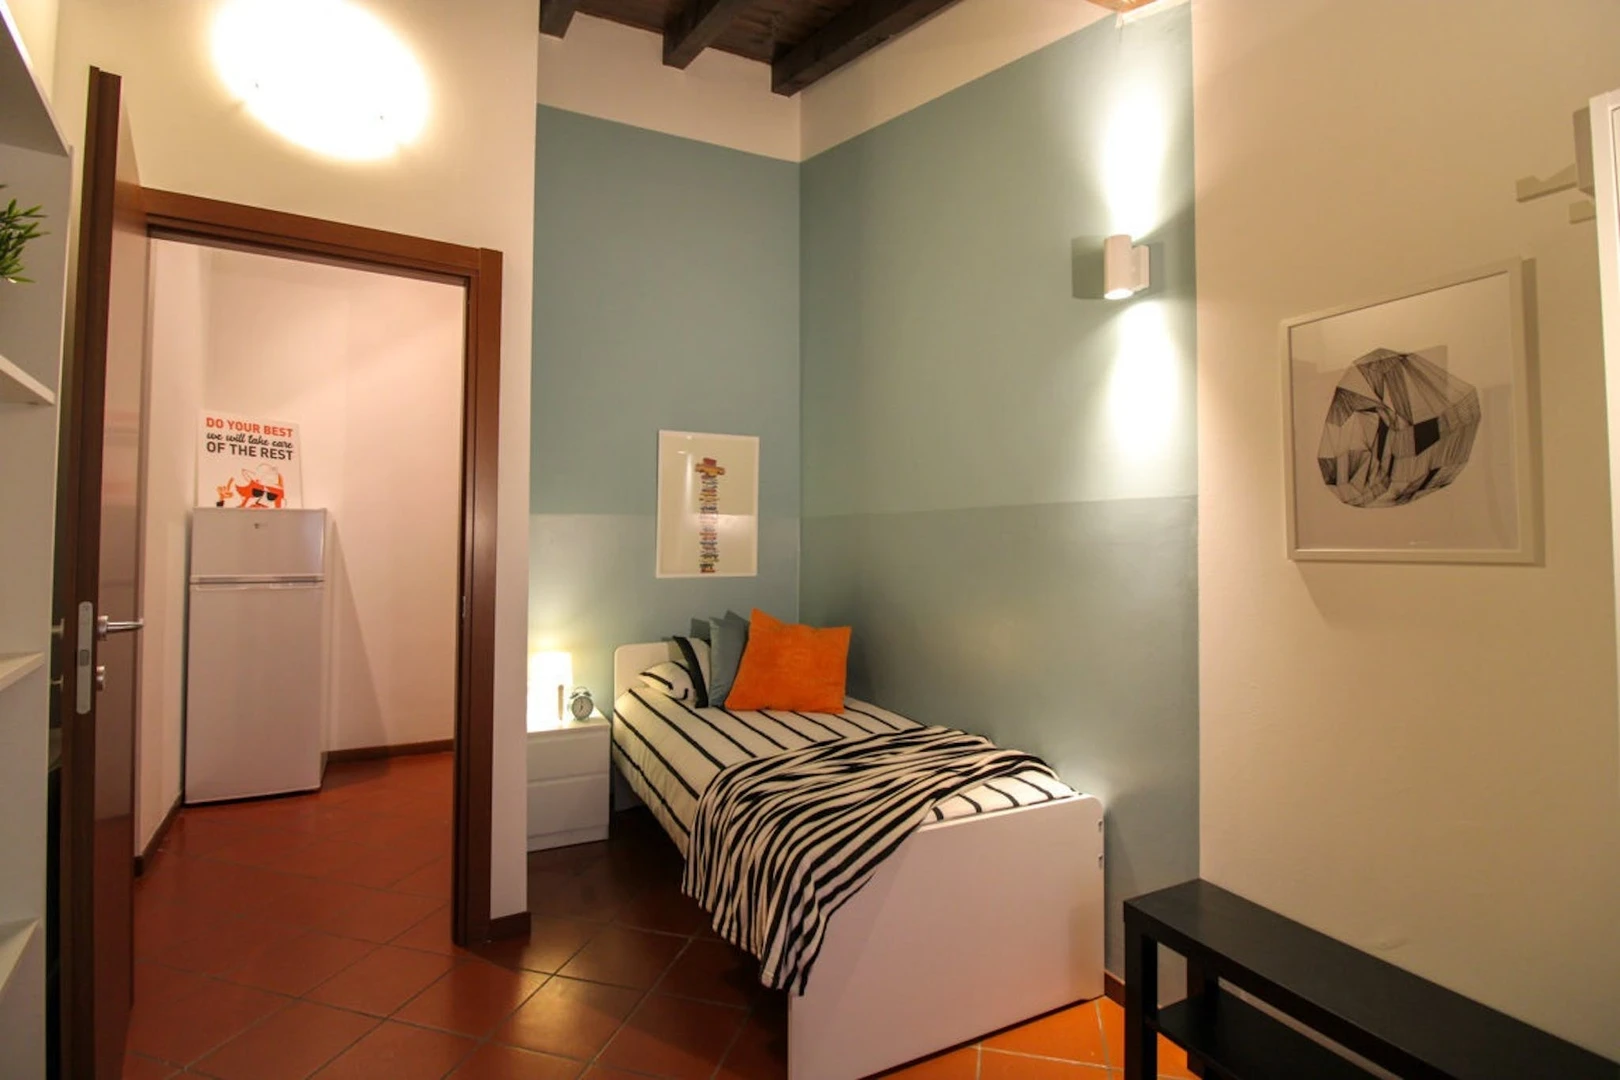 Brescia de çift kişilik yataklı kiralık oda